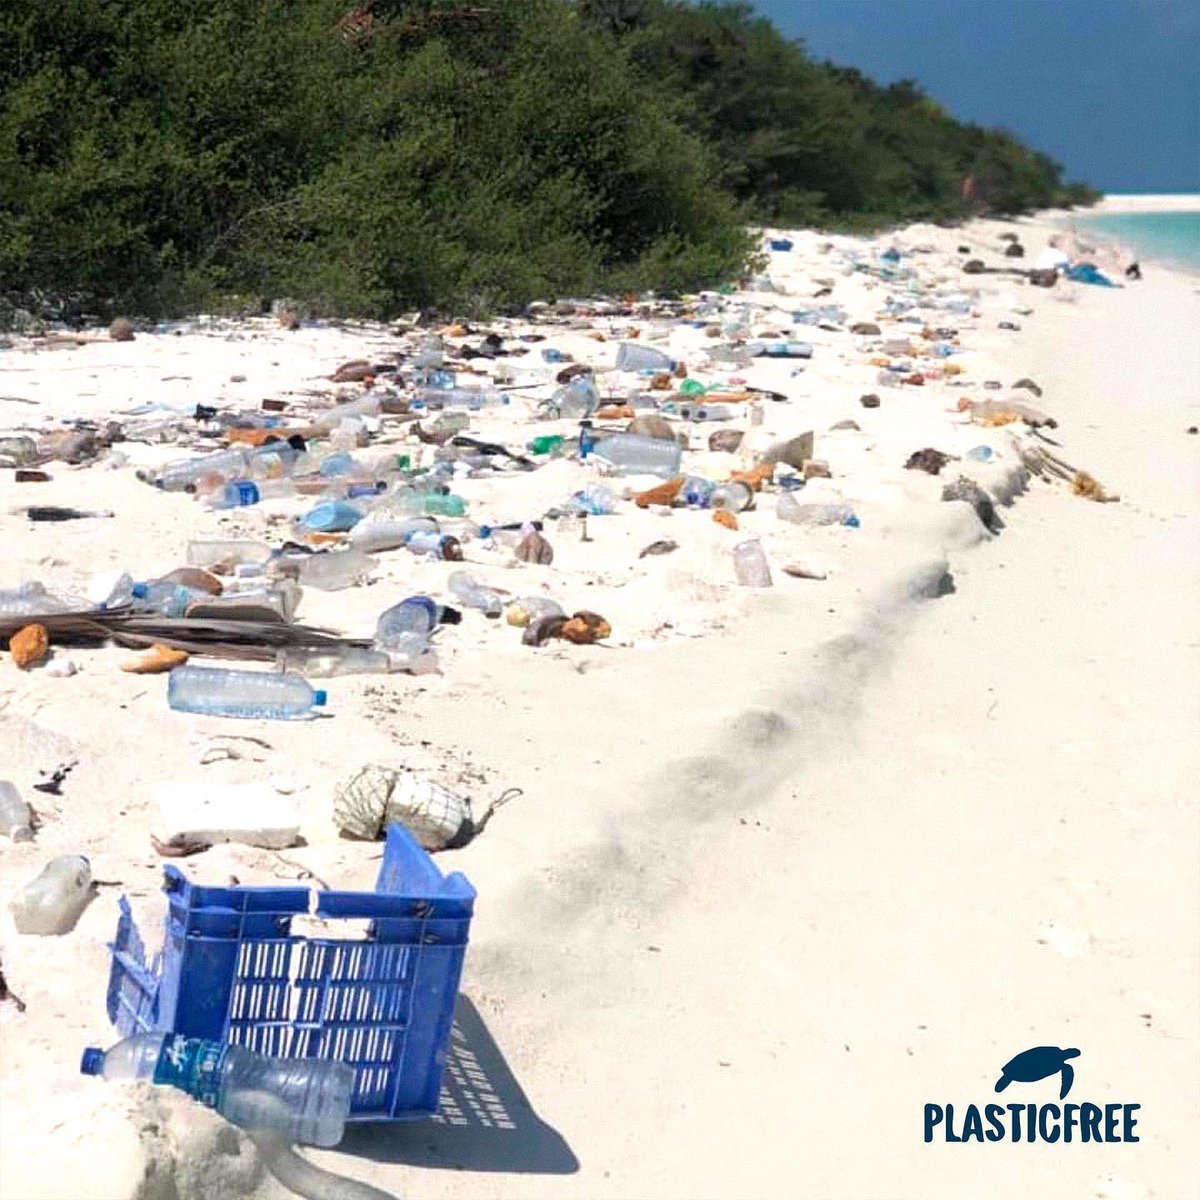 So heartbreaking 💔

#plasticfree #plasticpollution